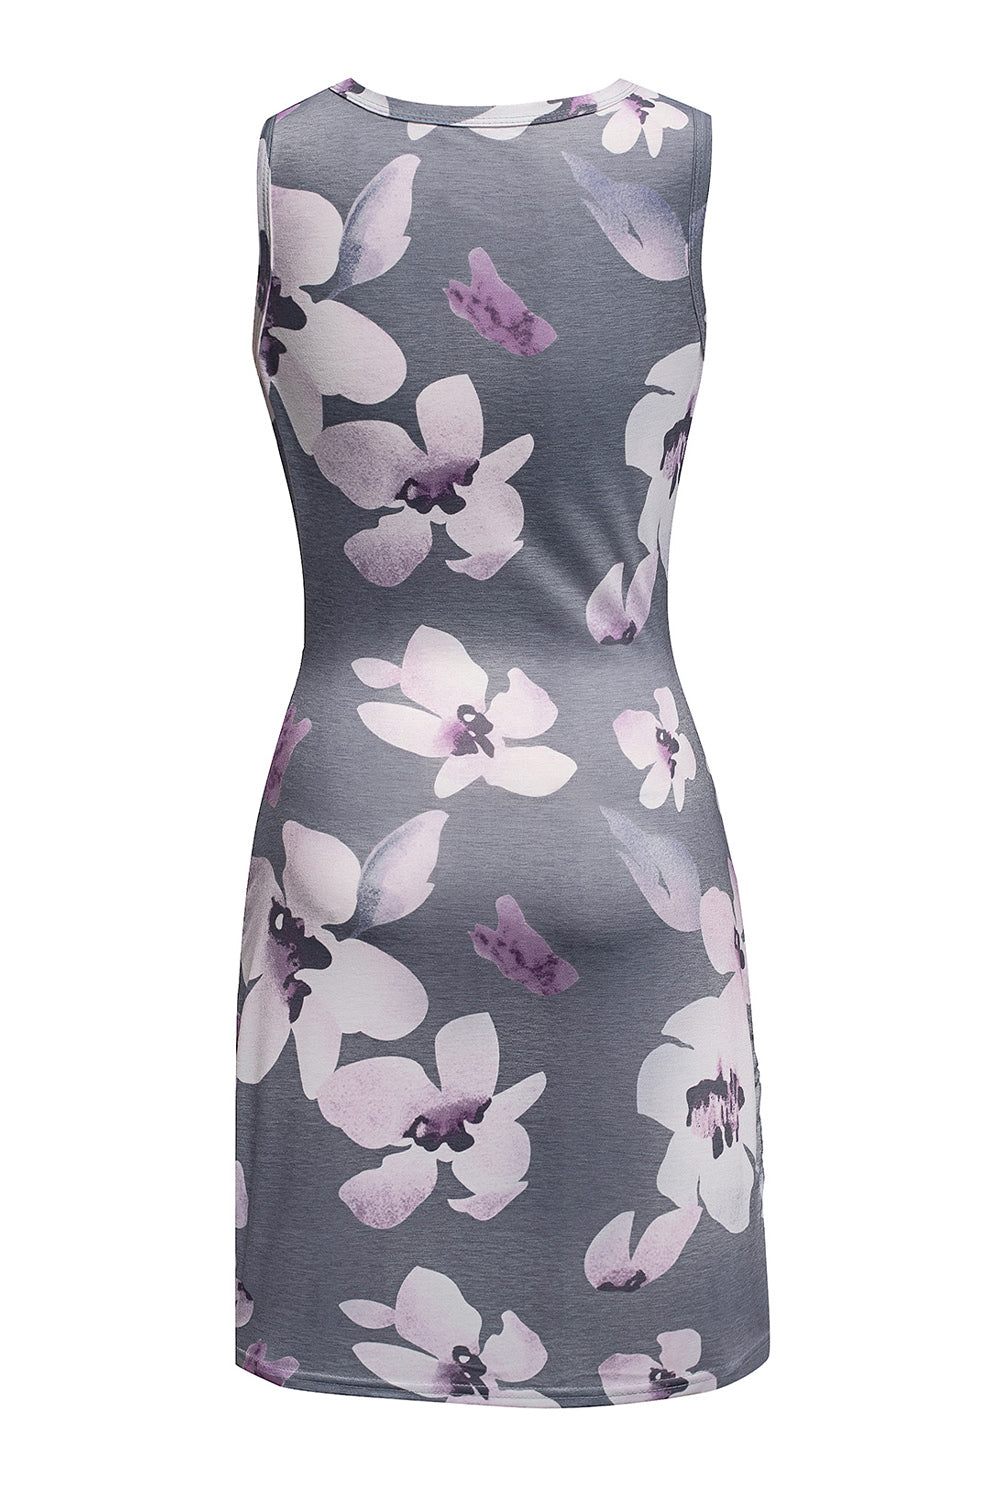 Floral Print Hollow Out Wrap Tie Mini Dress Mini Dresses JT's Designer Fashion